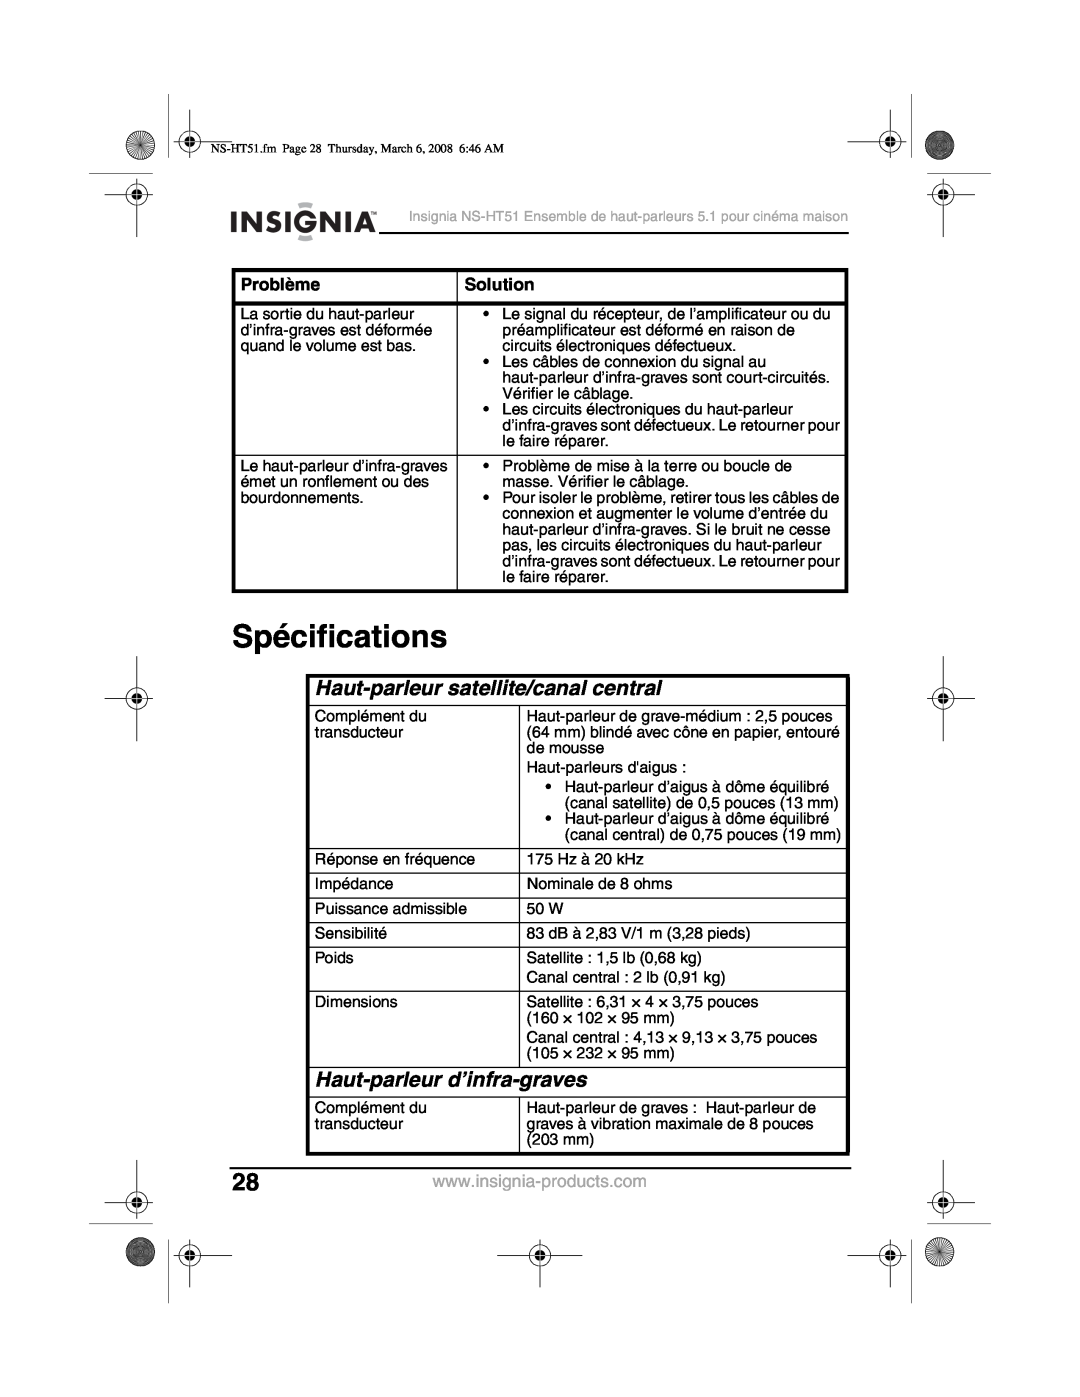 Insignia NS-HT51 Spécifications, Haut-parleursatellite/canal central, Haut-parleur d’infra-graves, Problème, Solution 